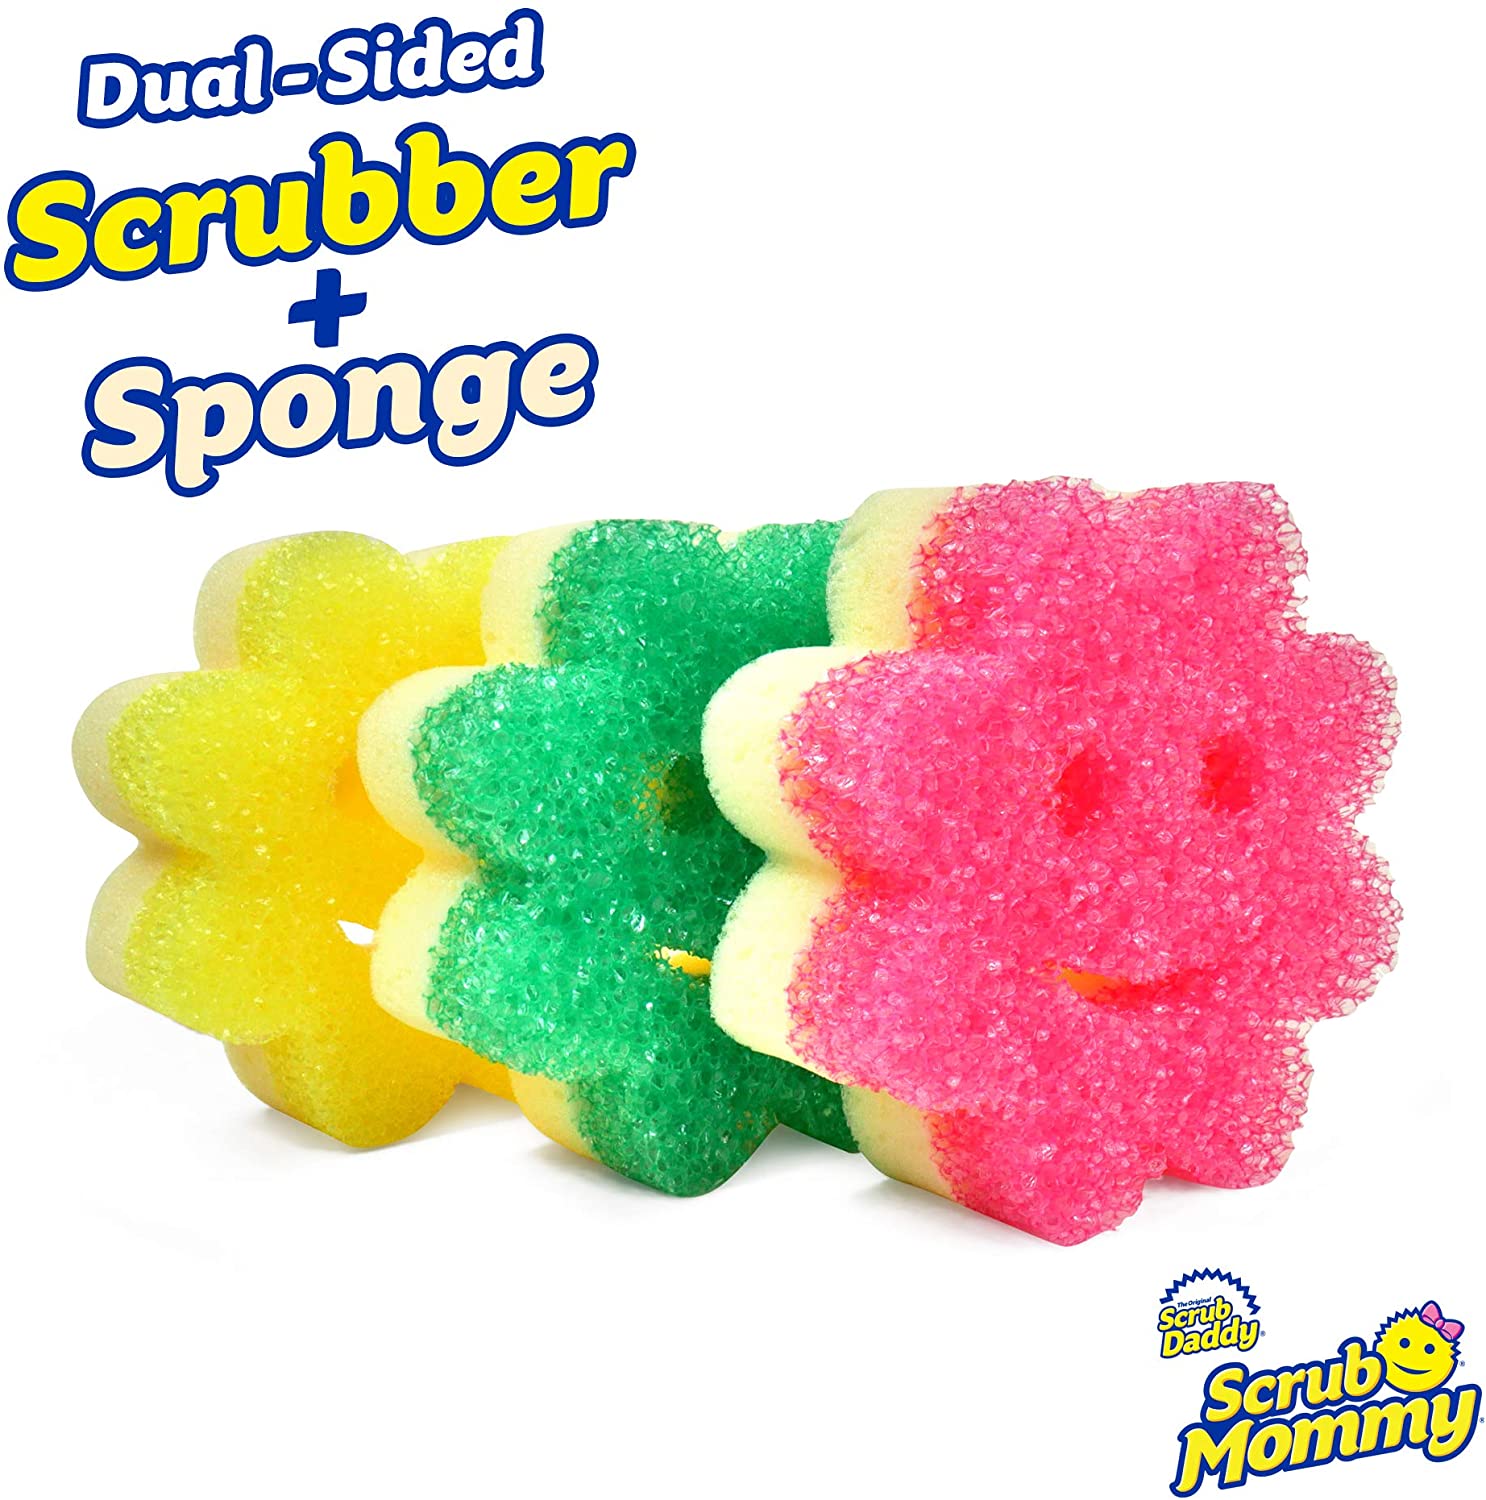 Scrub Daddy Sponge Set - Scrub Mommy Power Flower Dual, Multi-Surface 3 ct